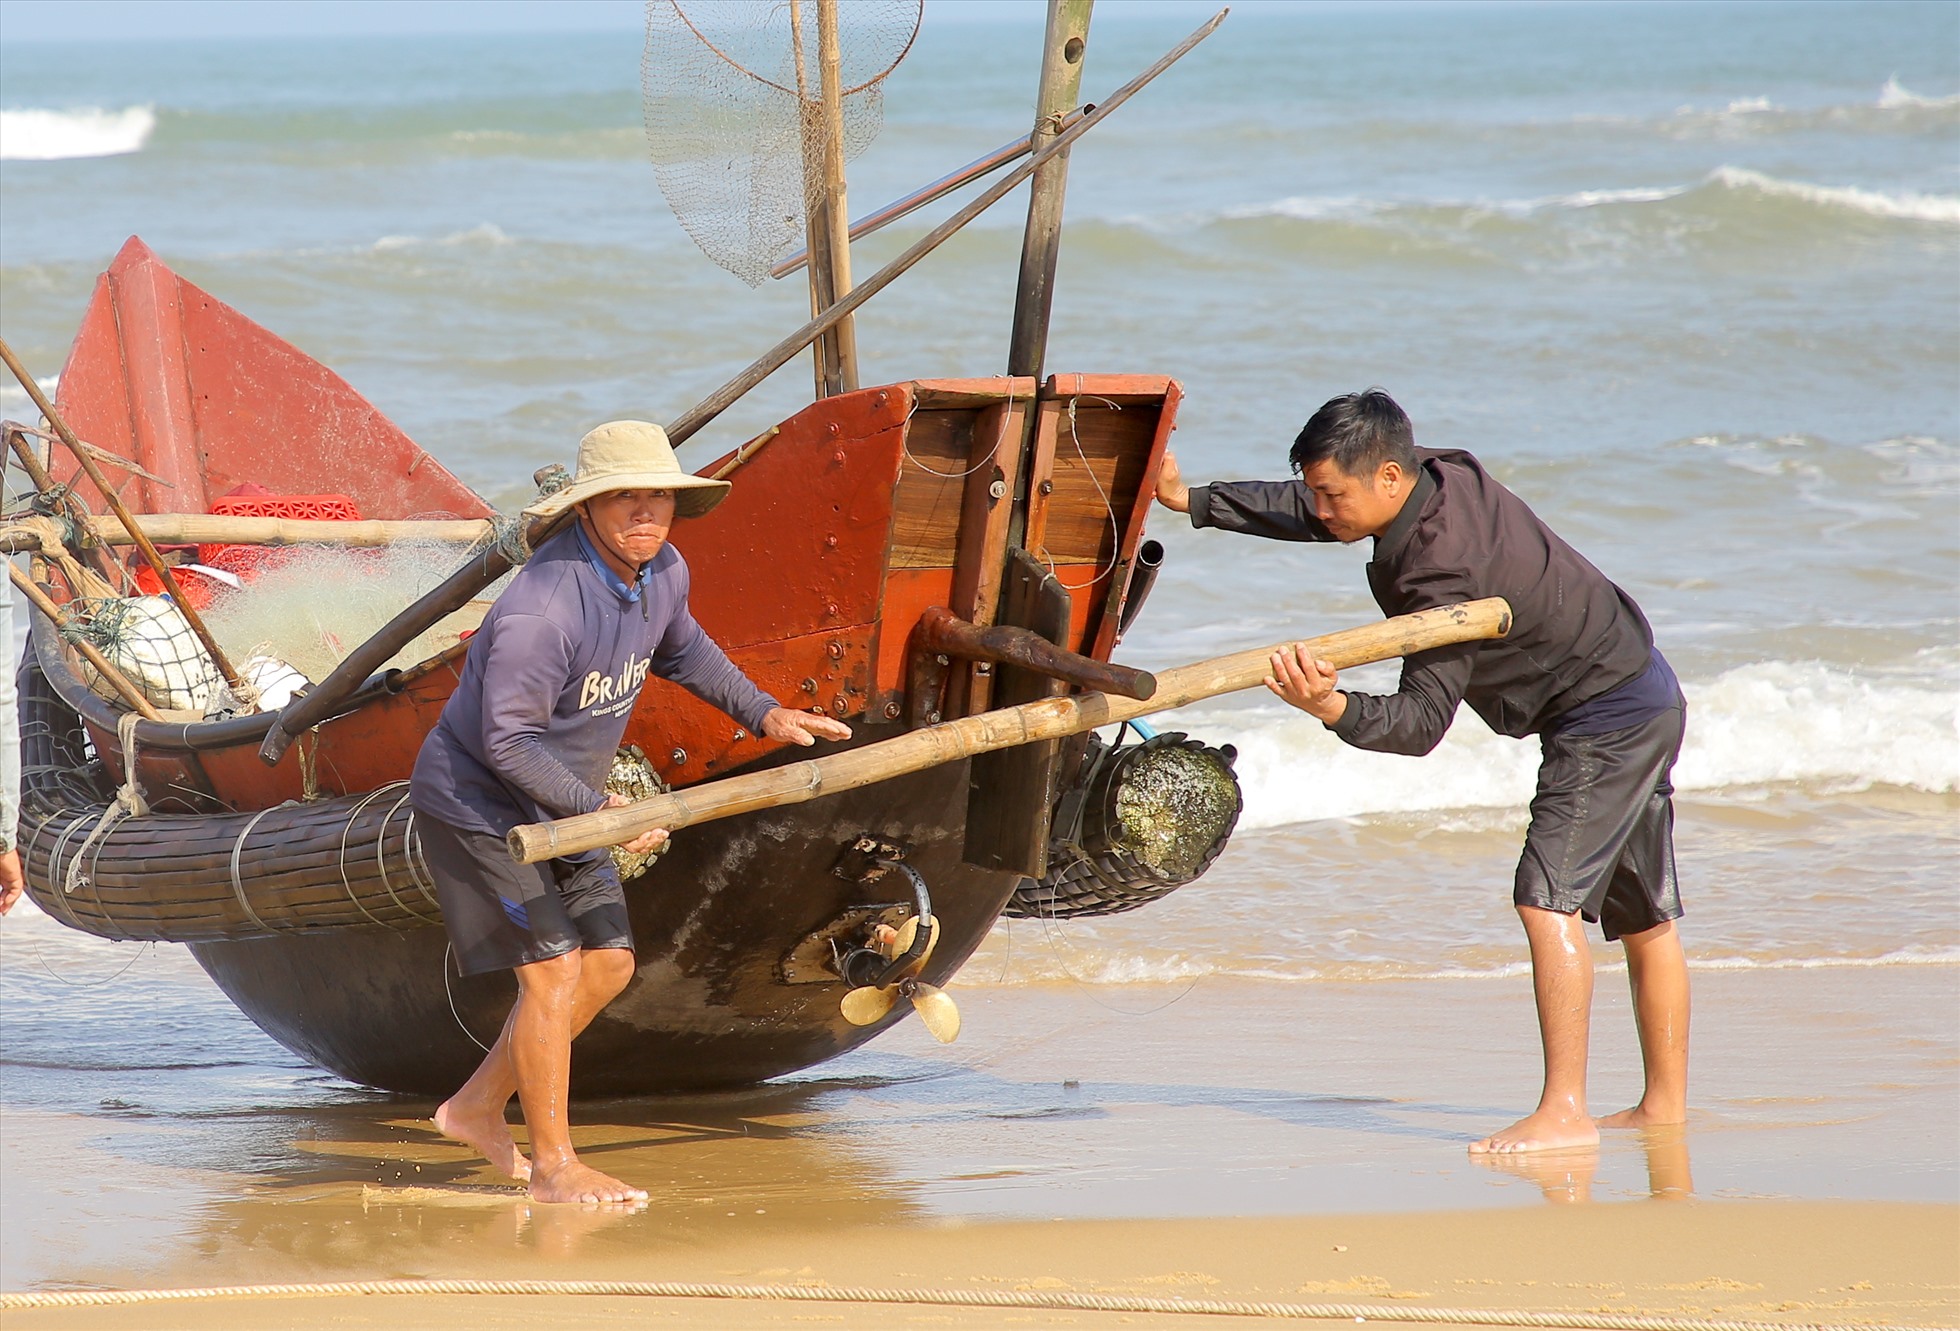 5h sáng, ông Nguyễn Xuân Kỳ (bên trái ảnh) cùng con trai điều khiển chiếc tàu 12cv ra biển. Chuyến này, ông sẽ đánh bắt cá khoai bằng loại lưới 2. Di chuyển suốt chặng đường khoảng 12km dọc bờ biển, đến trưa thì tàu về bờ.